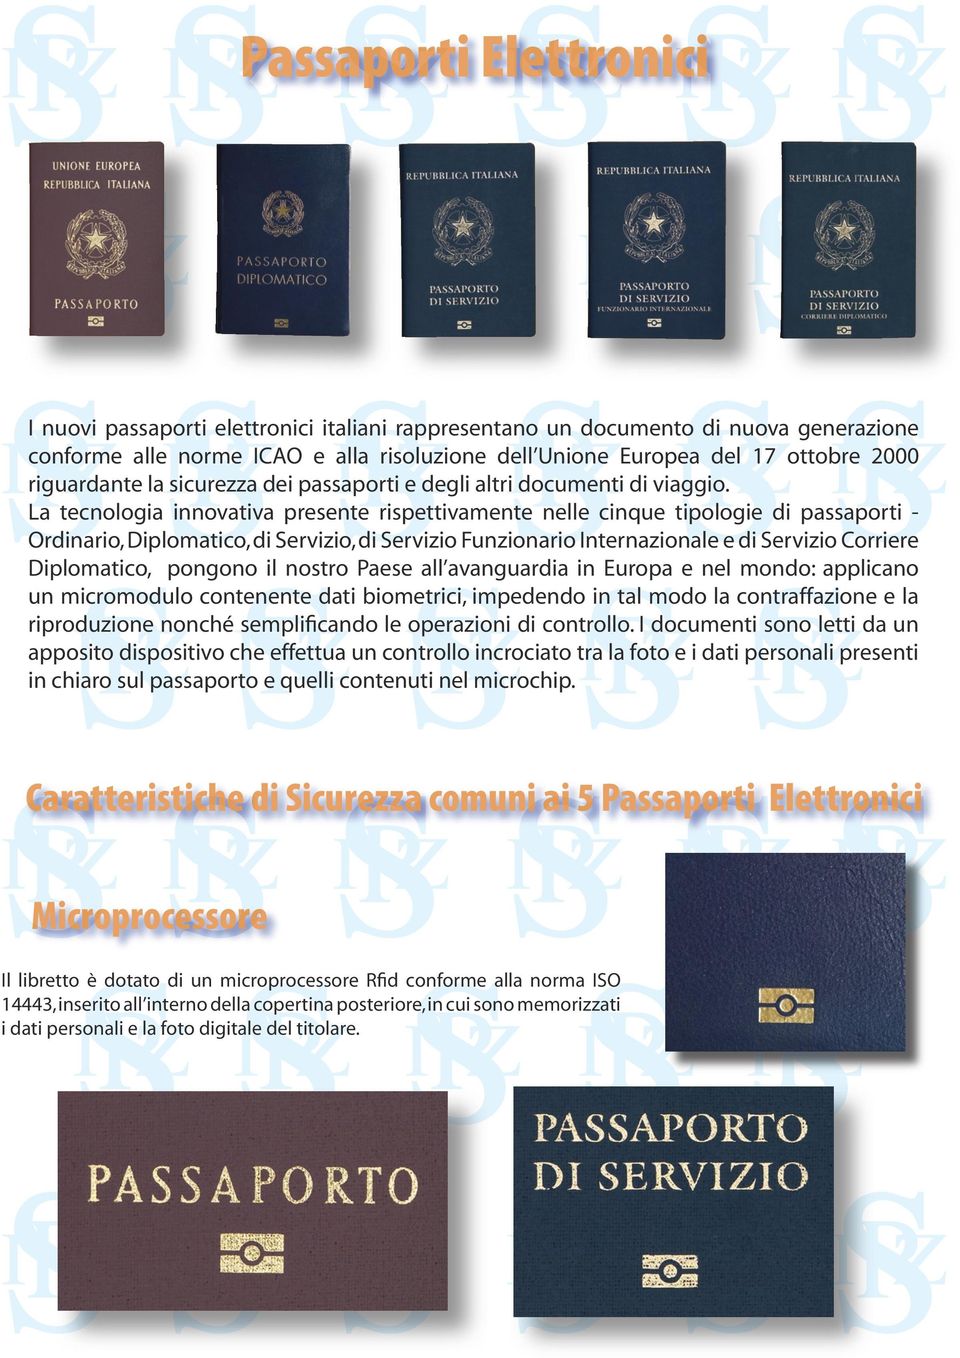 La tecnologia innovativa presente rispettivamente nelle cinque tipologie di passaporti - Ordinario, Diplomatico, di Servizio, di Servizio Funzionario Internazionale e di Servizio Corriere